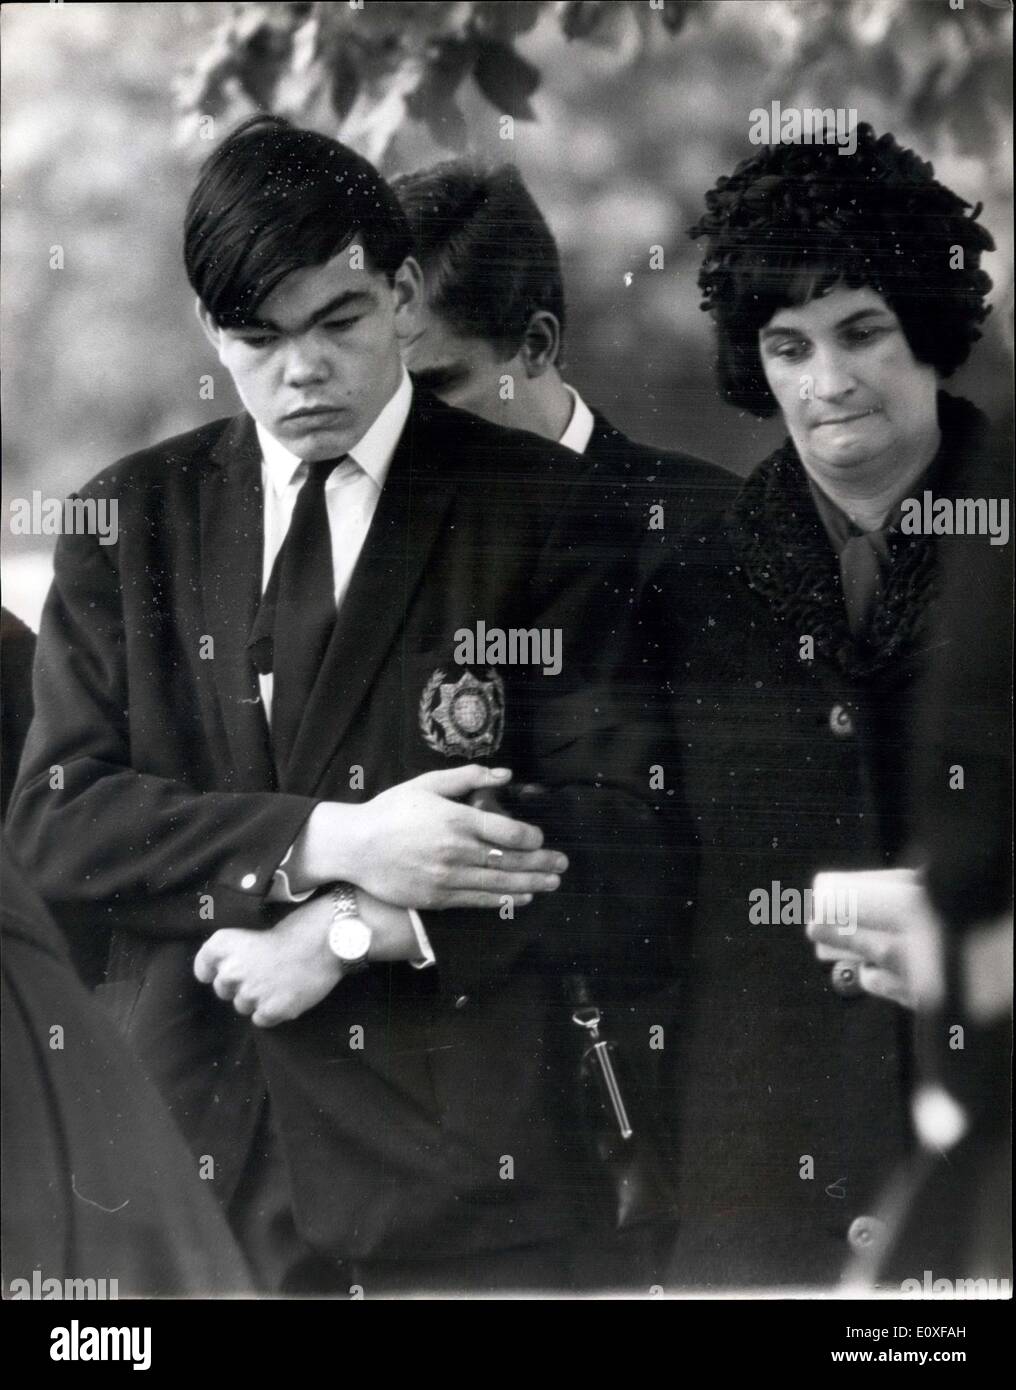 Septembre 01, 1966 - Les funérailles de London's trois policiers abattus pour l'enterrement de l'incarcération de C.P. Fox. Les funérailles ont eu lieu aujourd'hui des trois policiers de Londres , détective privé - Le Sergent Christopher head- temporaire - le détective David Wombwell et agent de police Geoffrey fox, qui ont été tués par balles près de l'Absinthe Serubs prison il y a trois semaines. Sur la photo, Mme Fox , (veuve de P.C. Fox) et son fils de 16 ans sur la photo à côté de Paul le renvoi des services dans Hammeremith nouveau cimetière aujourd'hui. Banque D'Images